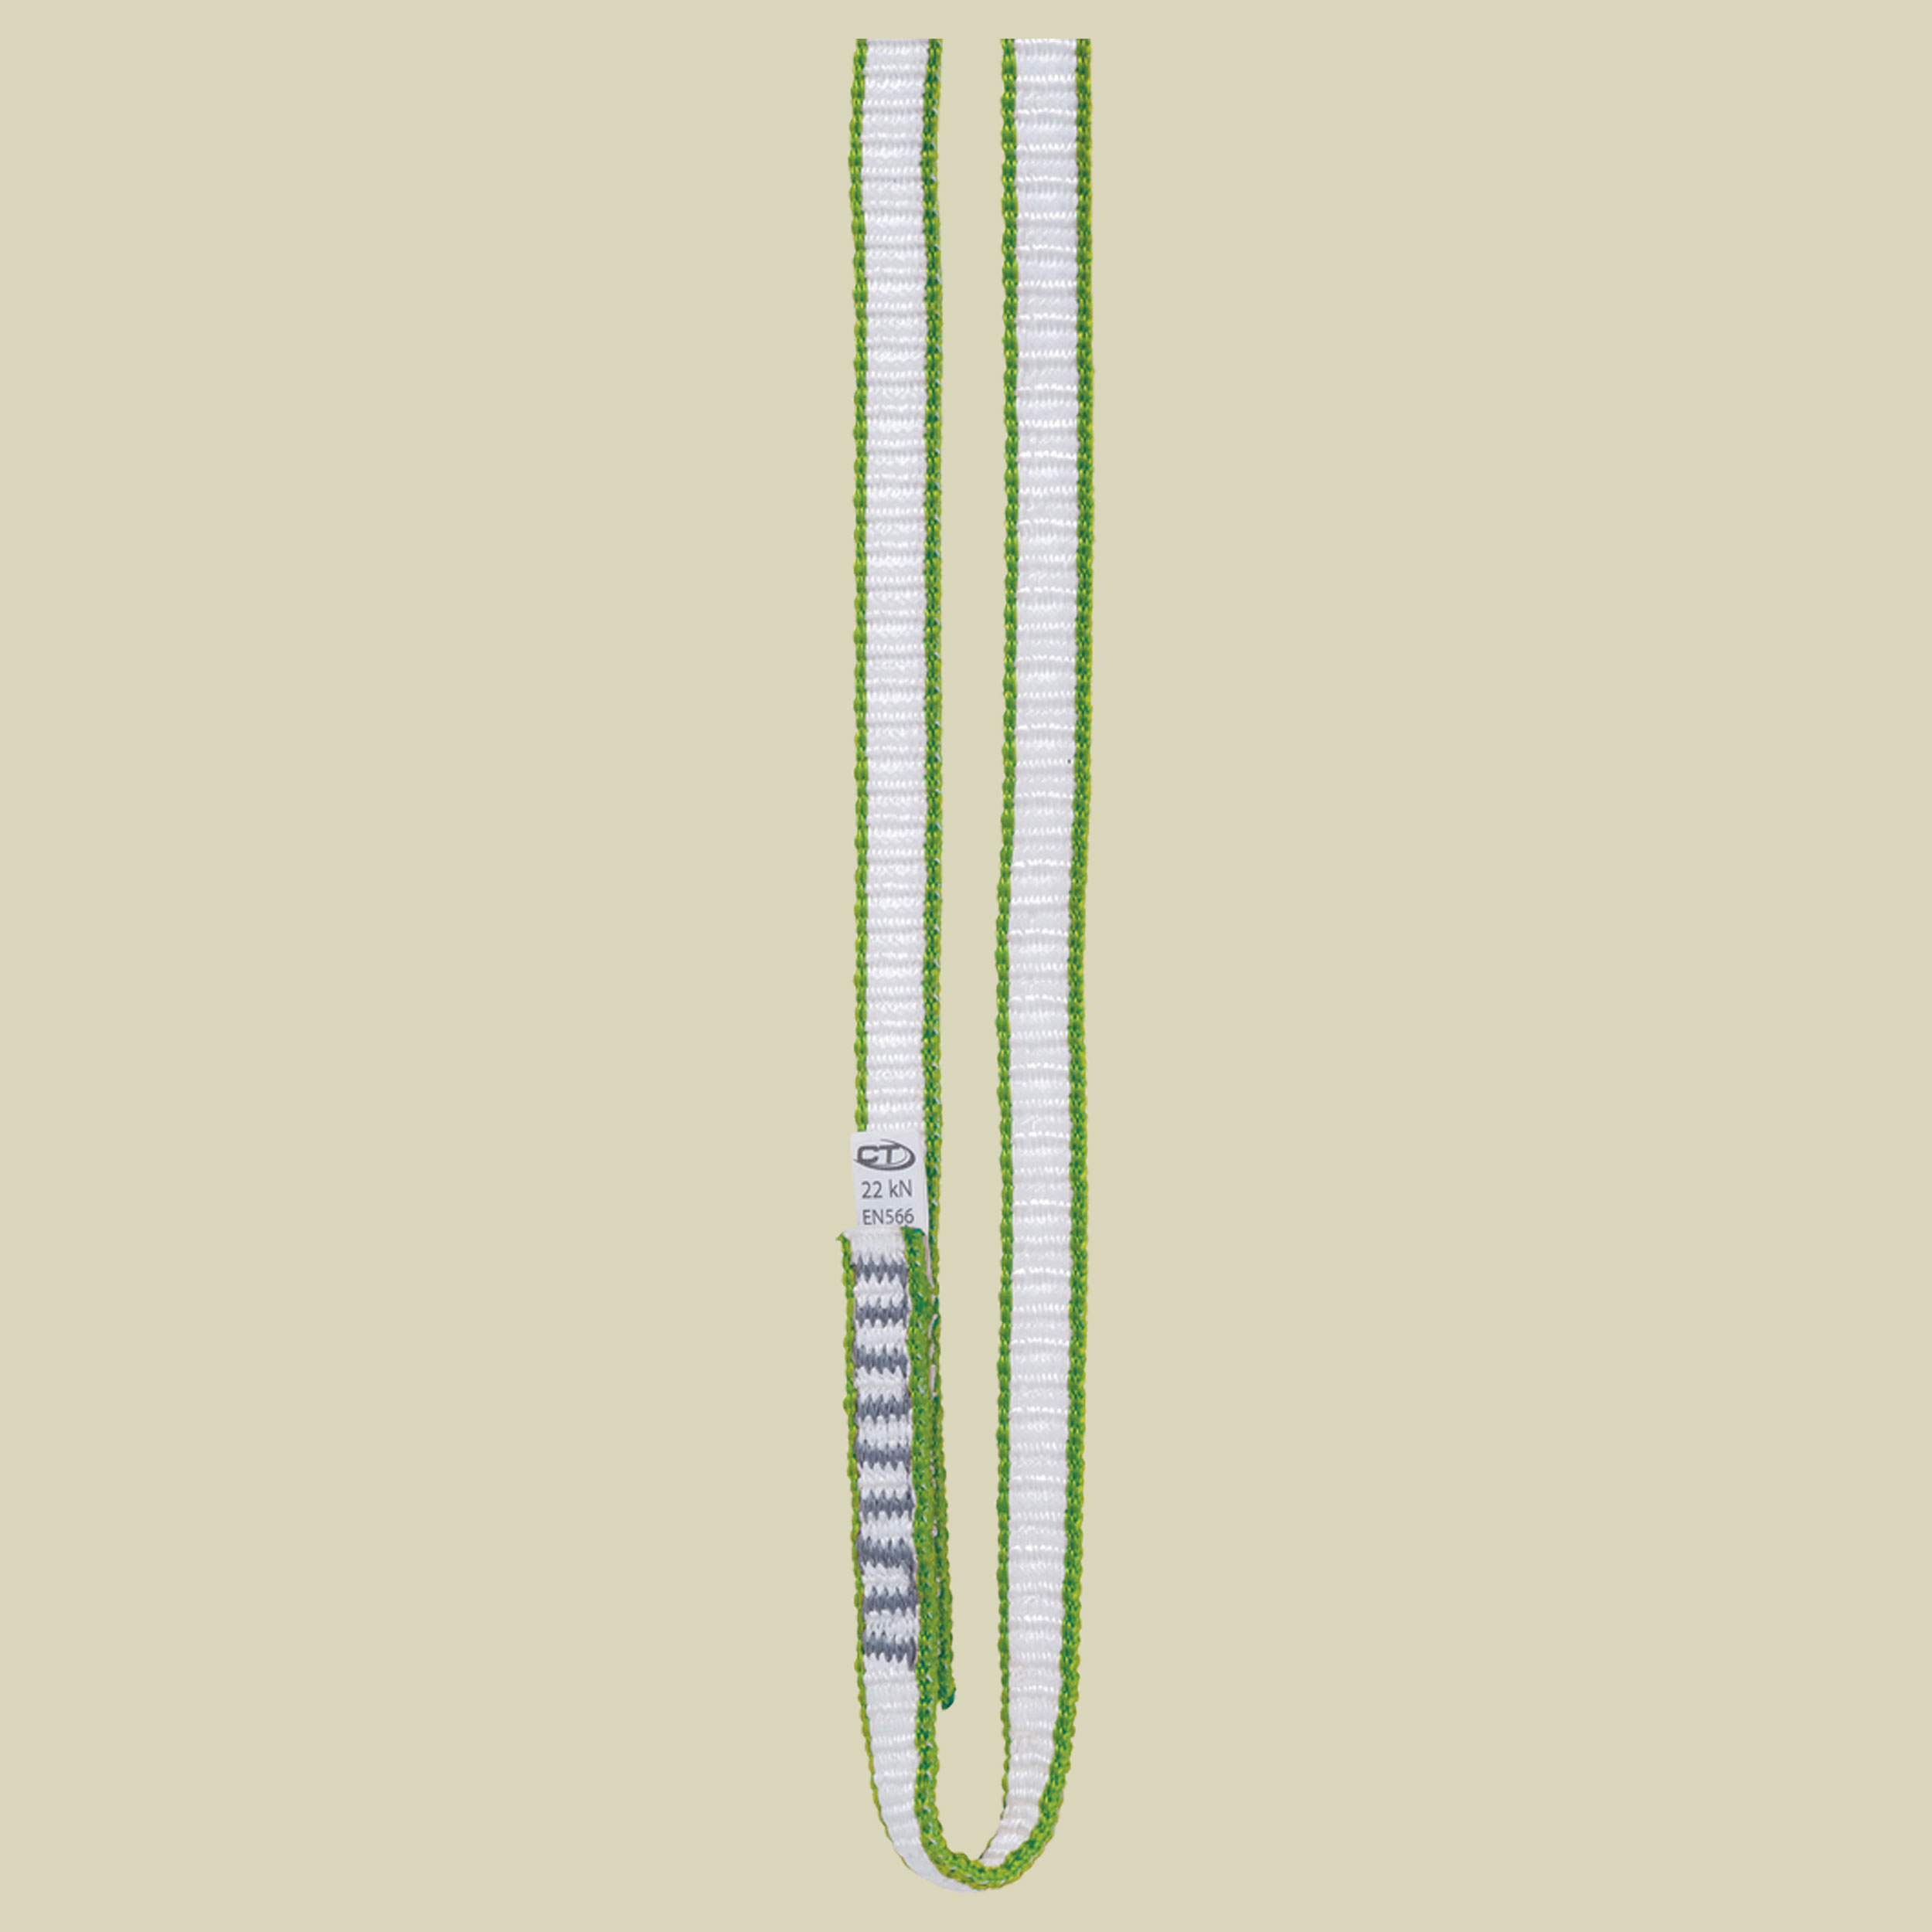 Looper DY Länge 240 cm Farbe white green